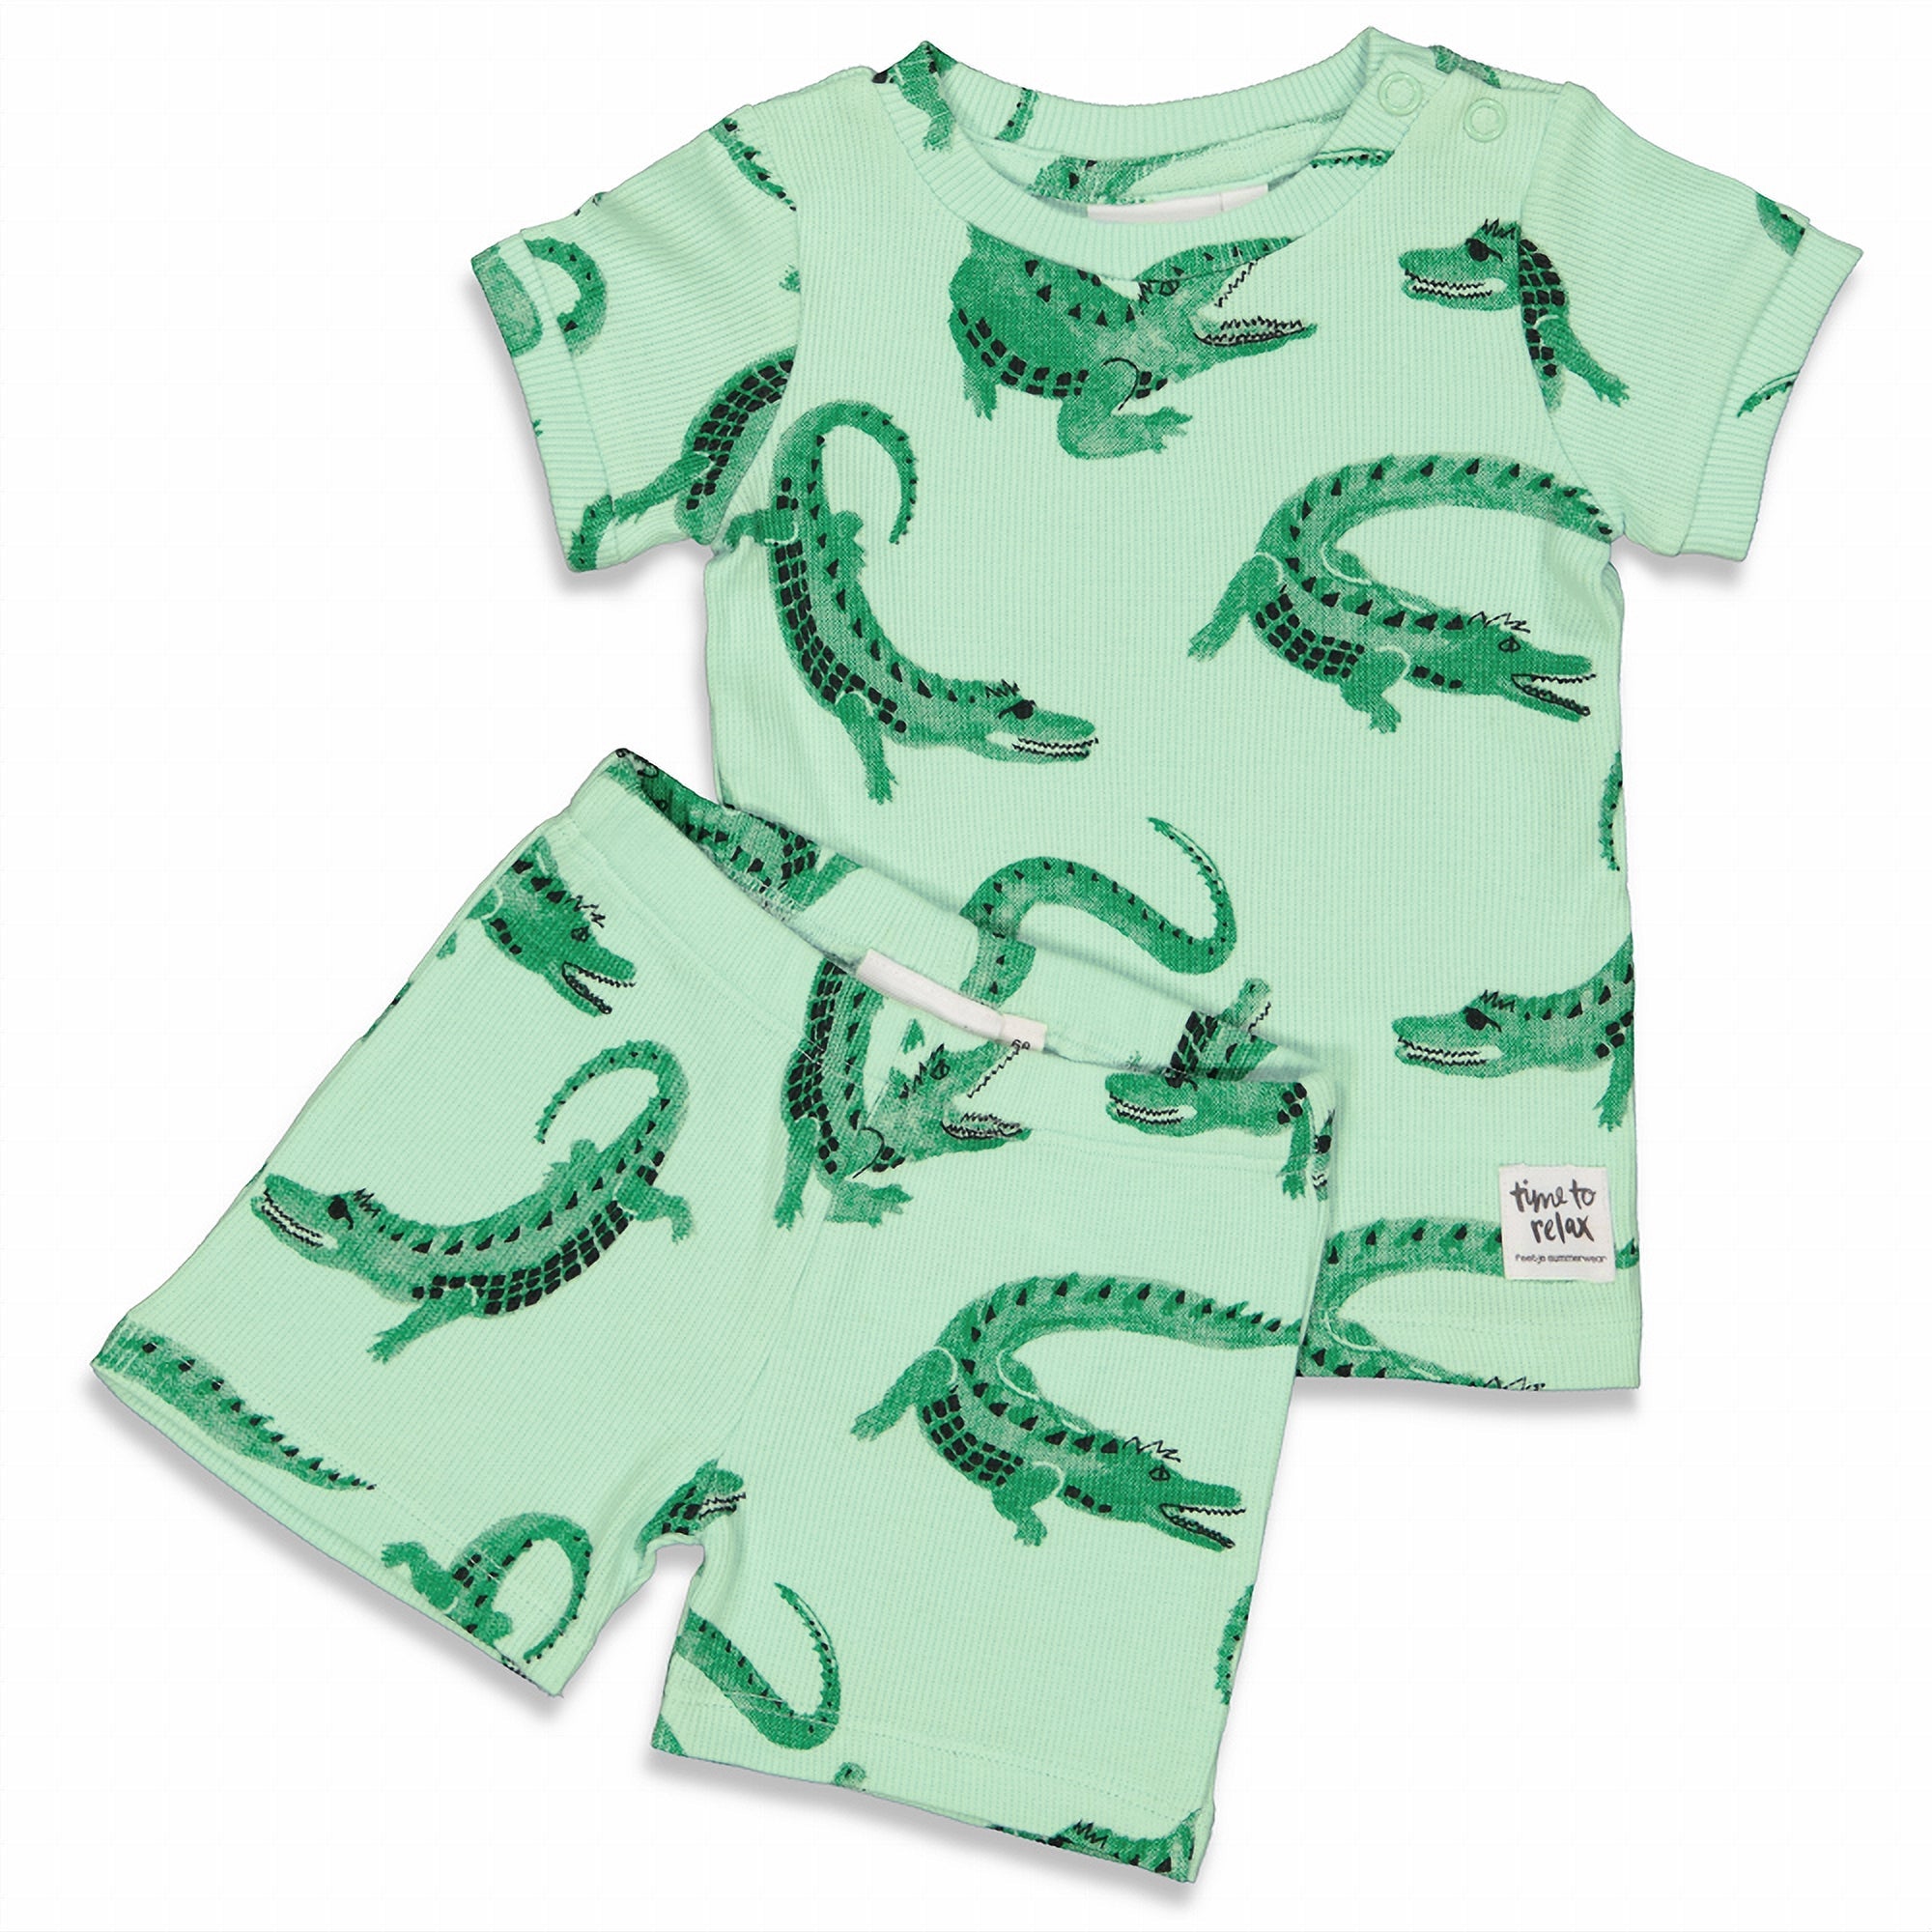 Jongens Chris Croc - Premium Summerwear by FEETJE van Feetje in de kleur Groen in maat 128.